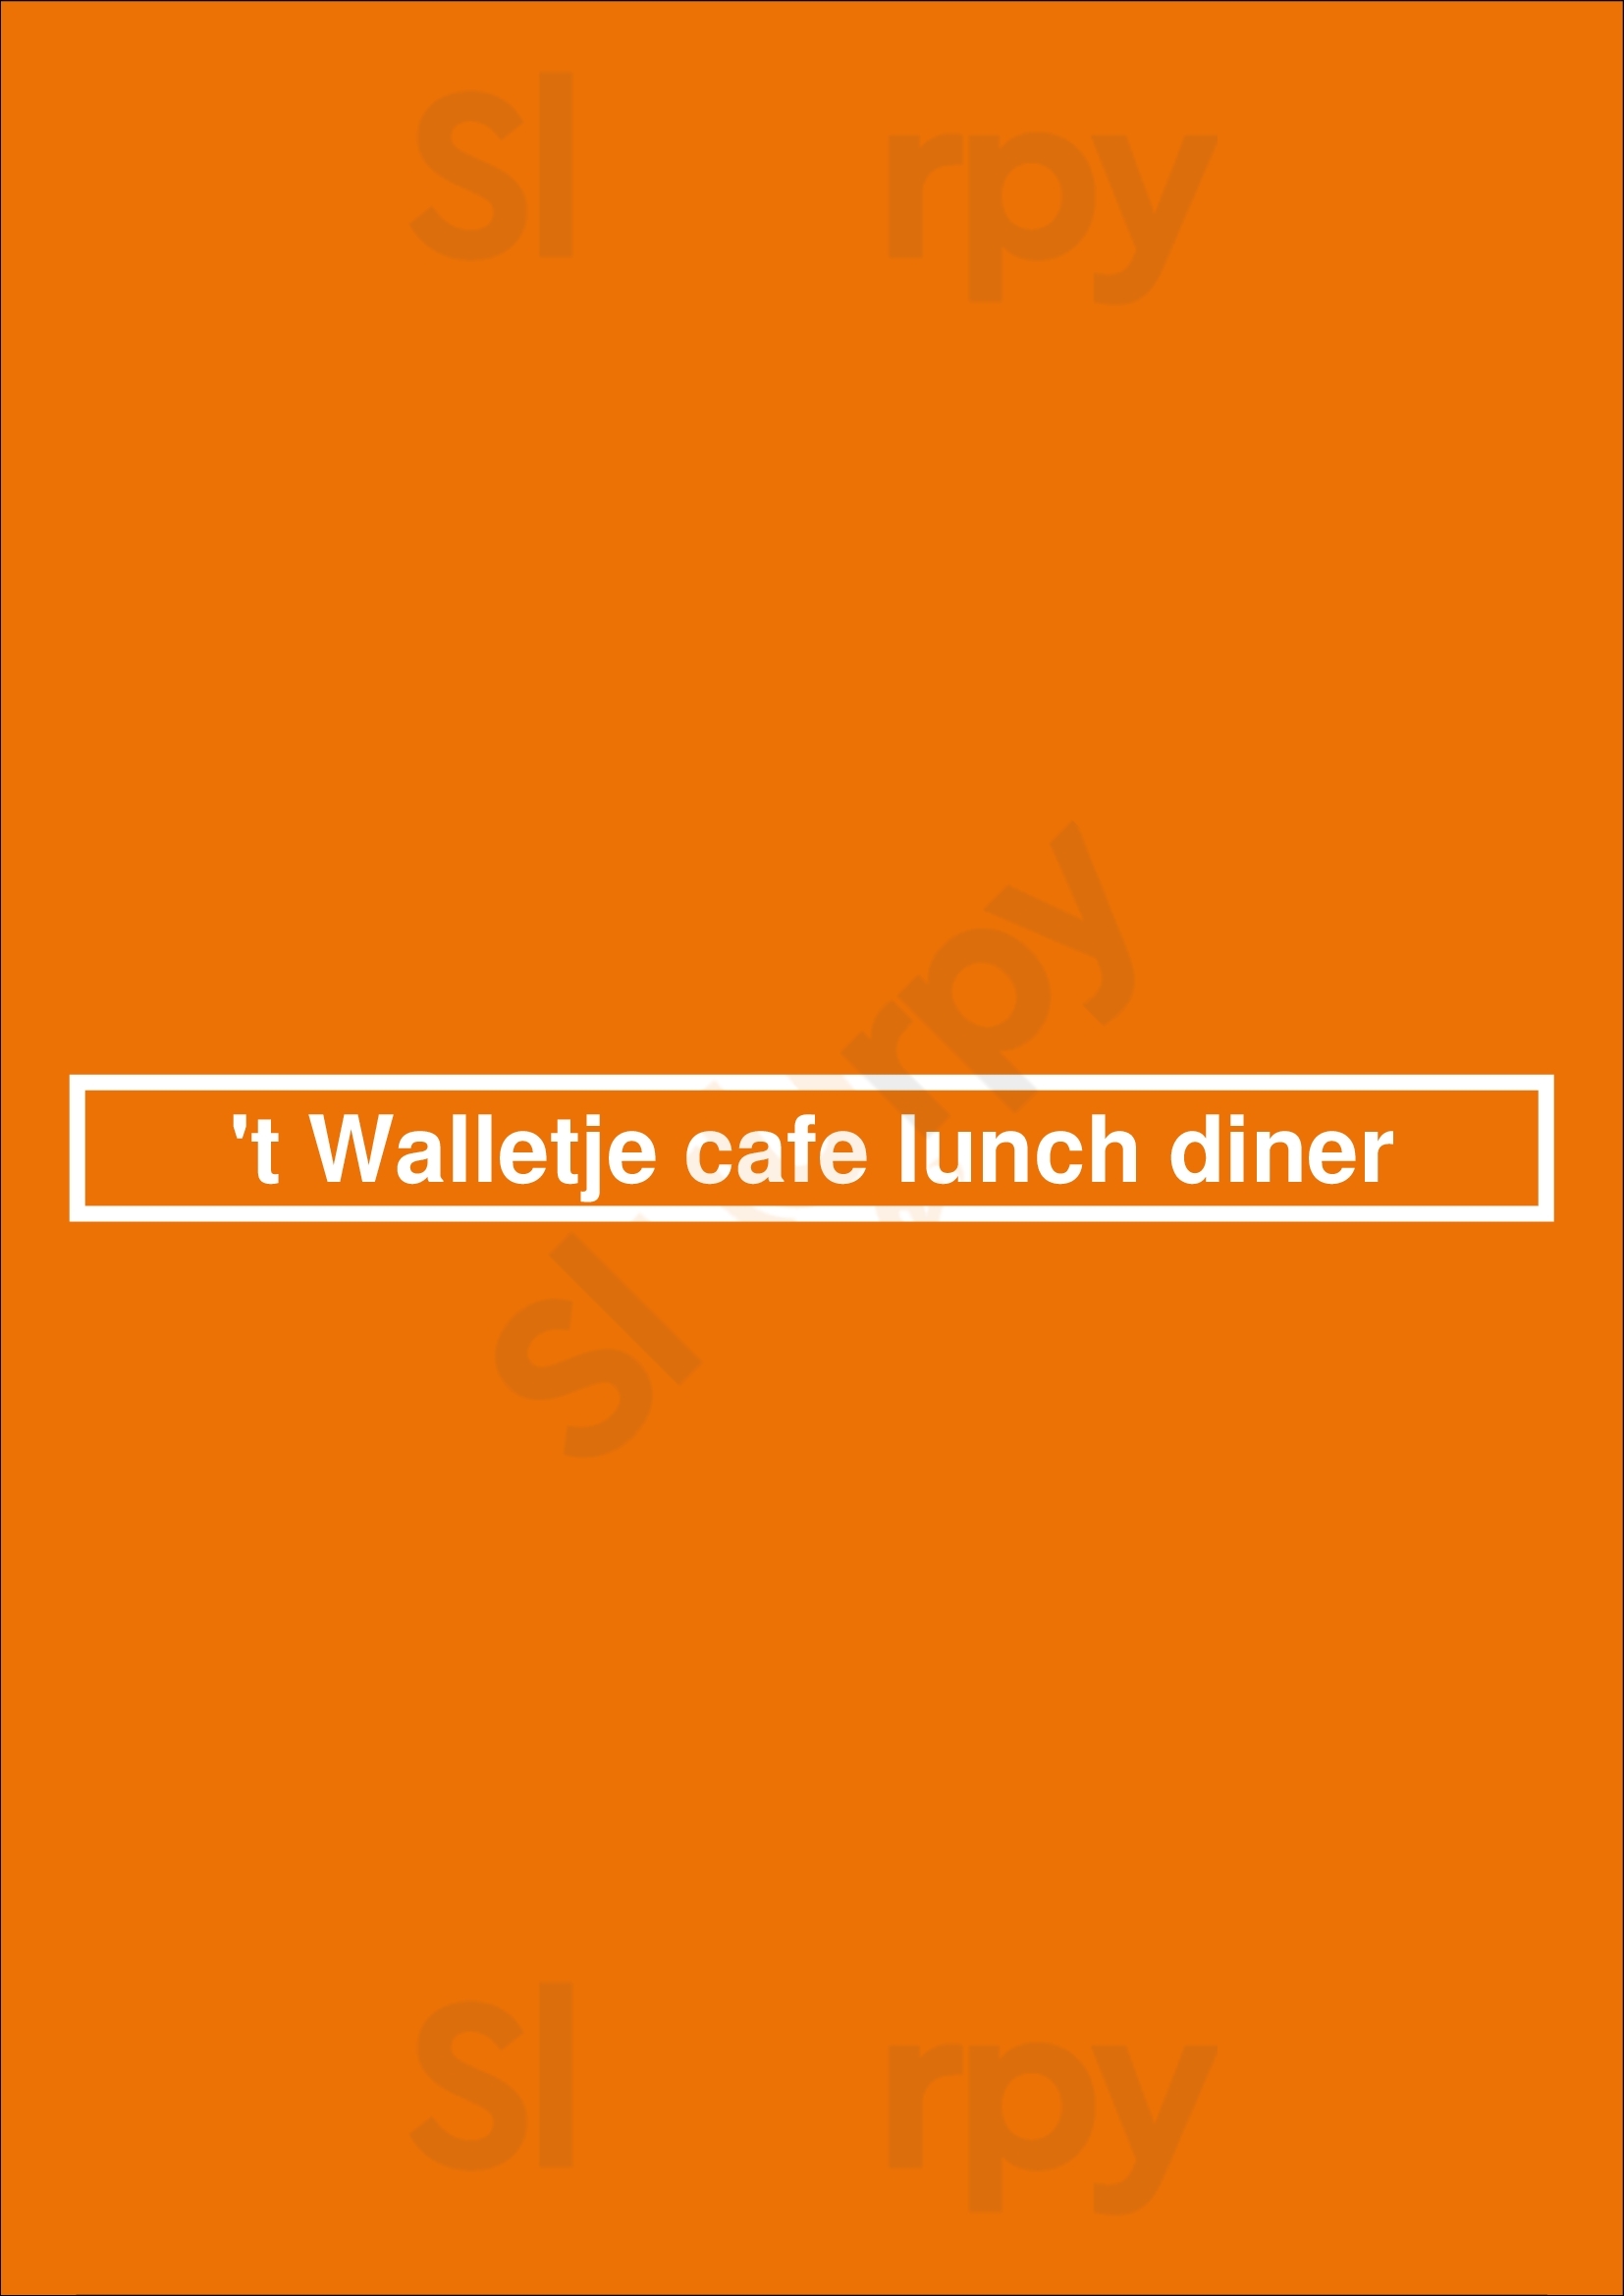 't Walletje Cafe Lunch Diner Delft Menu - 1